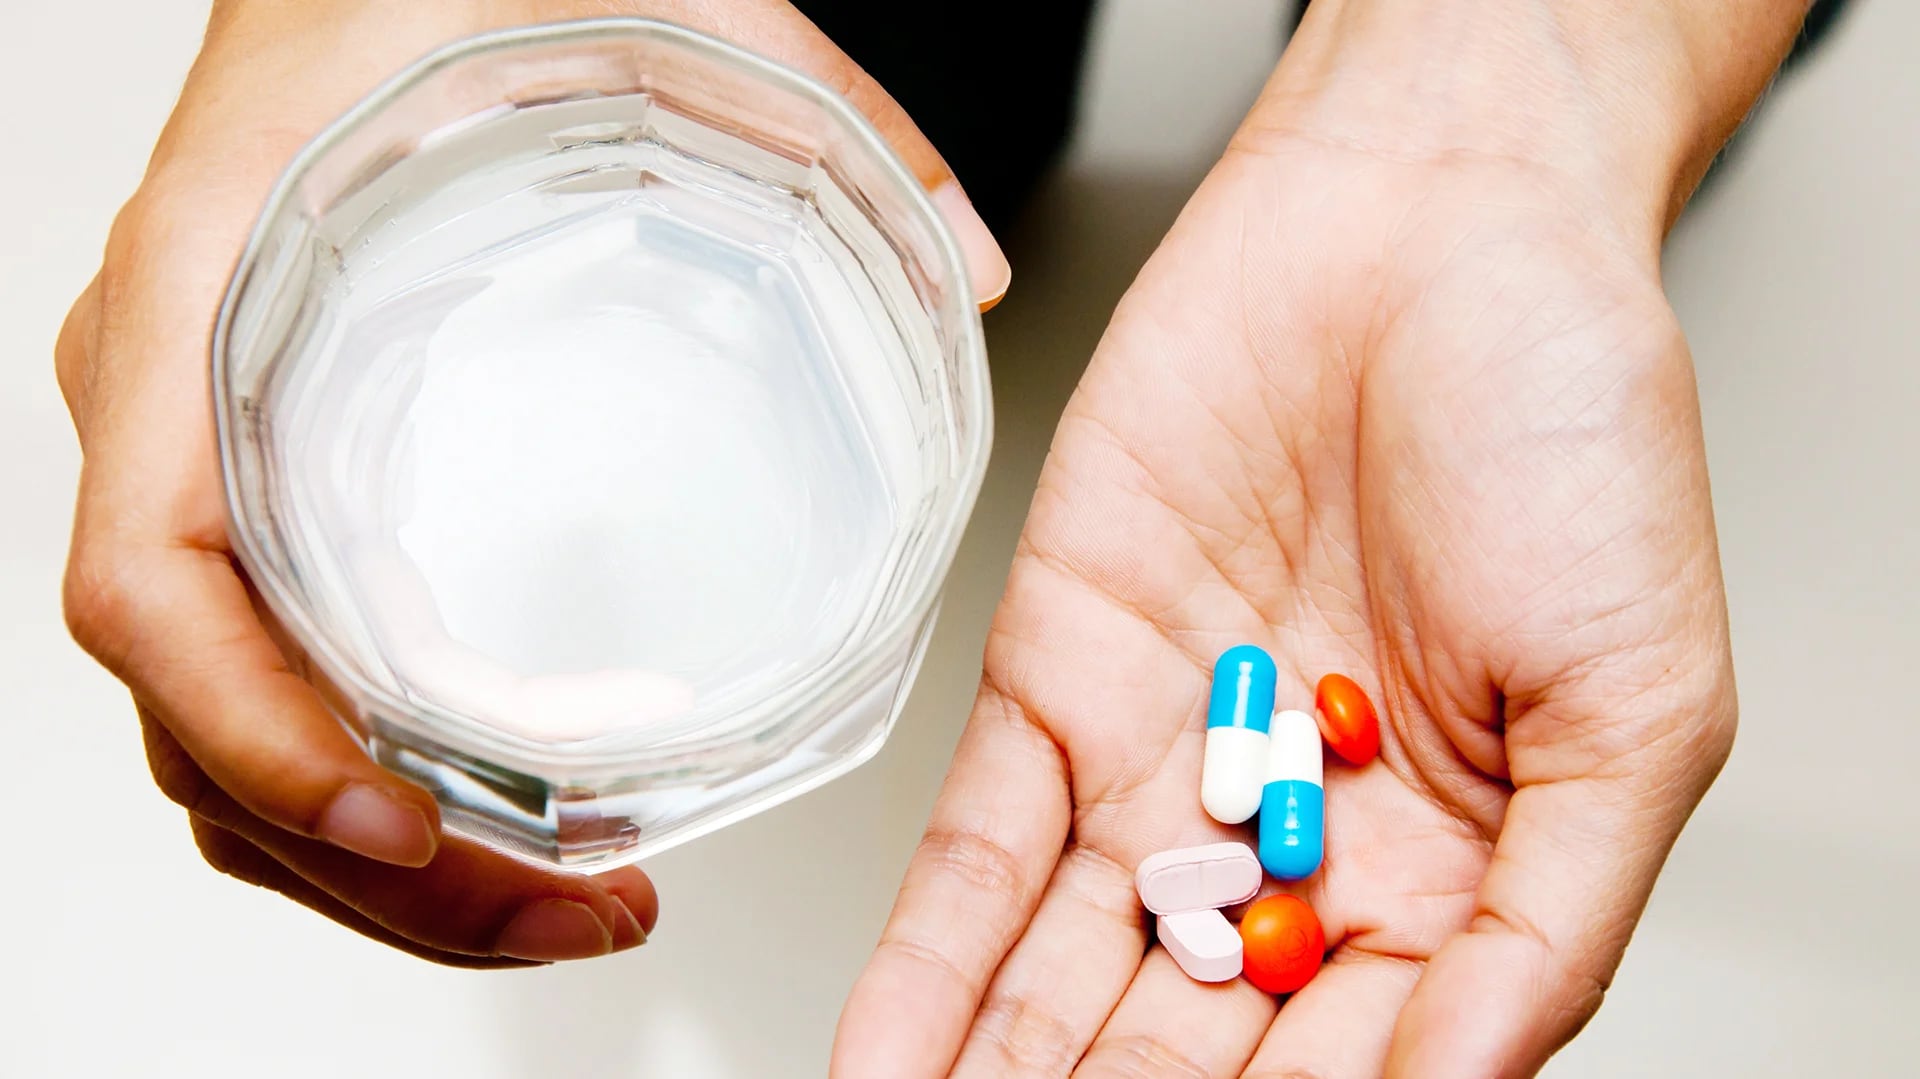 Todos los medicamentos tienen efectos adversos y pueden ocasionar dependencia (Shutterstock)